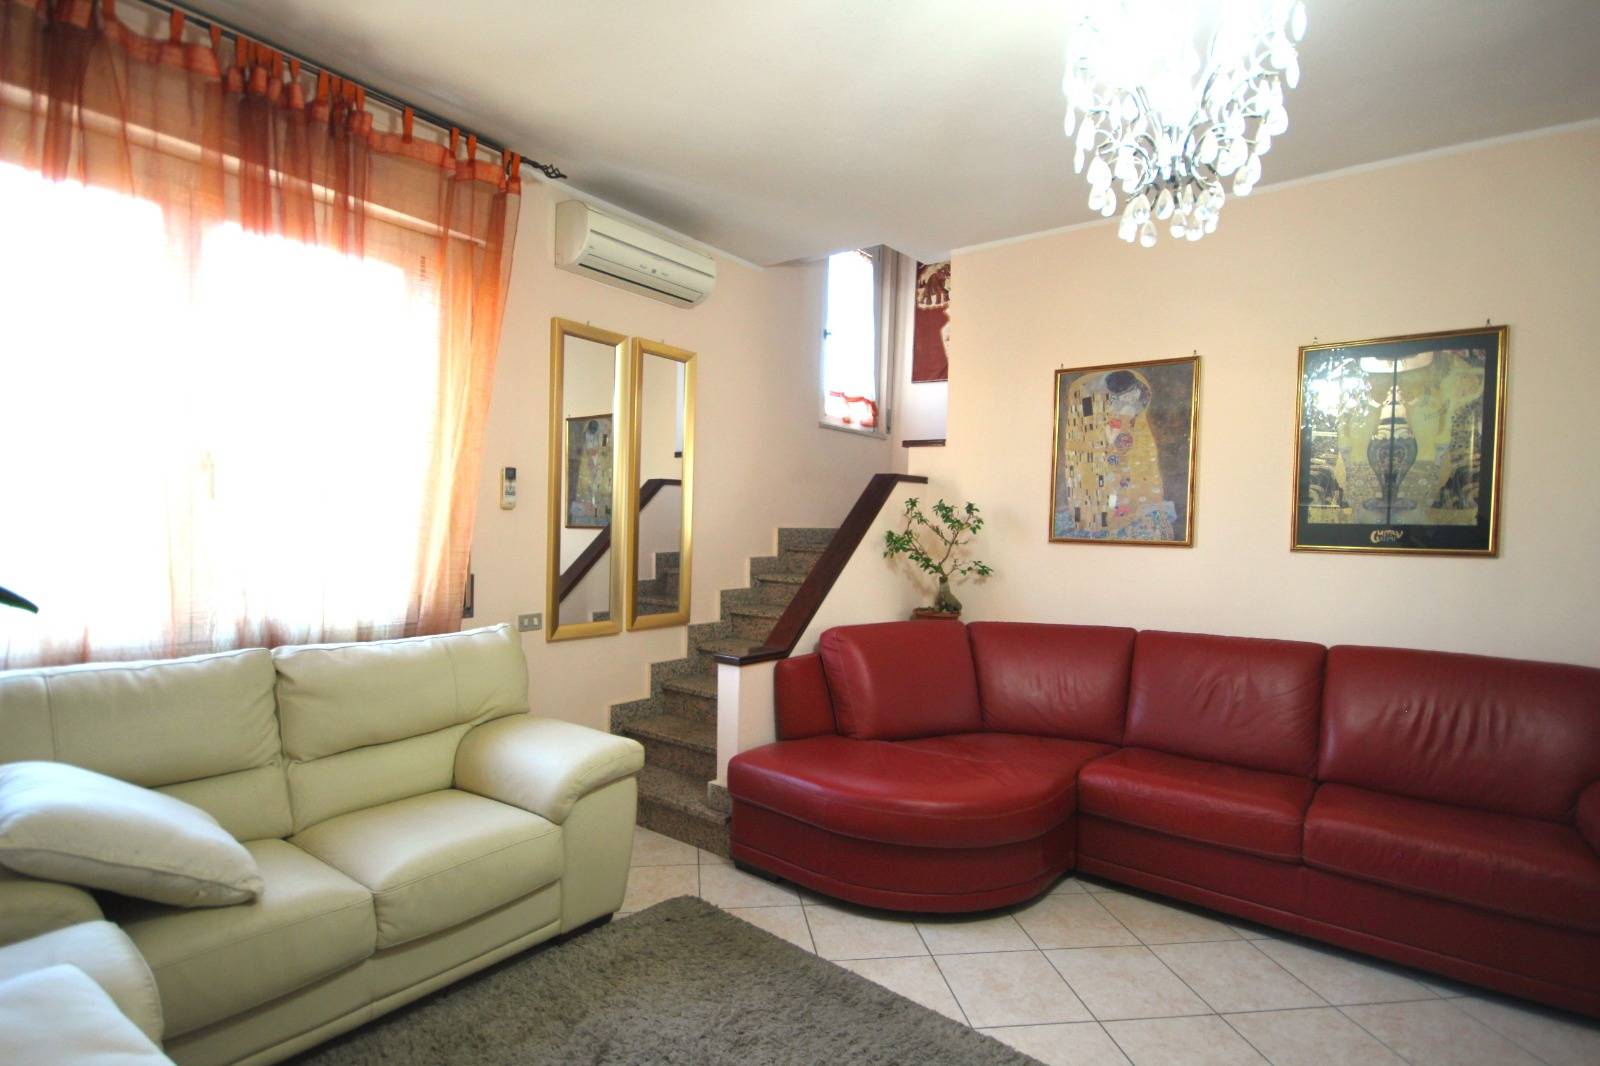 Appartamento in vendita a Quartu Sant'Elena, 5 locali, zona Località: CentroViaCagliari-Merello, prezzo € 200.000 | PortaleAgenzieImmobiliari.it